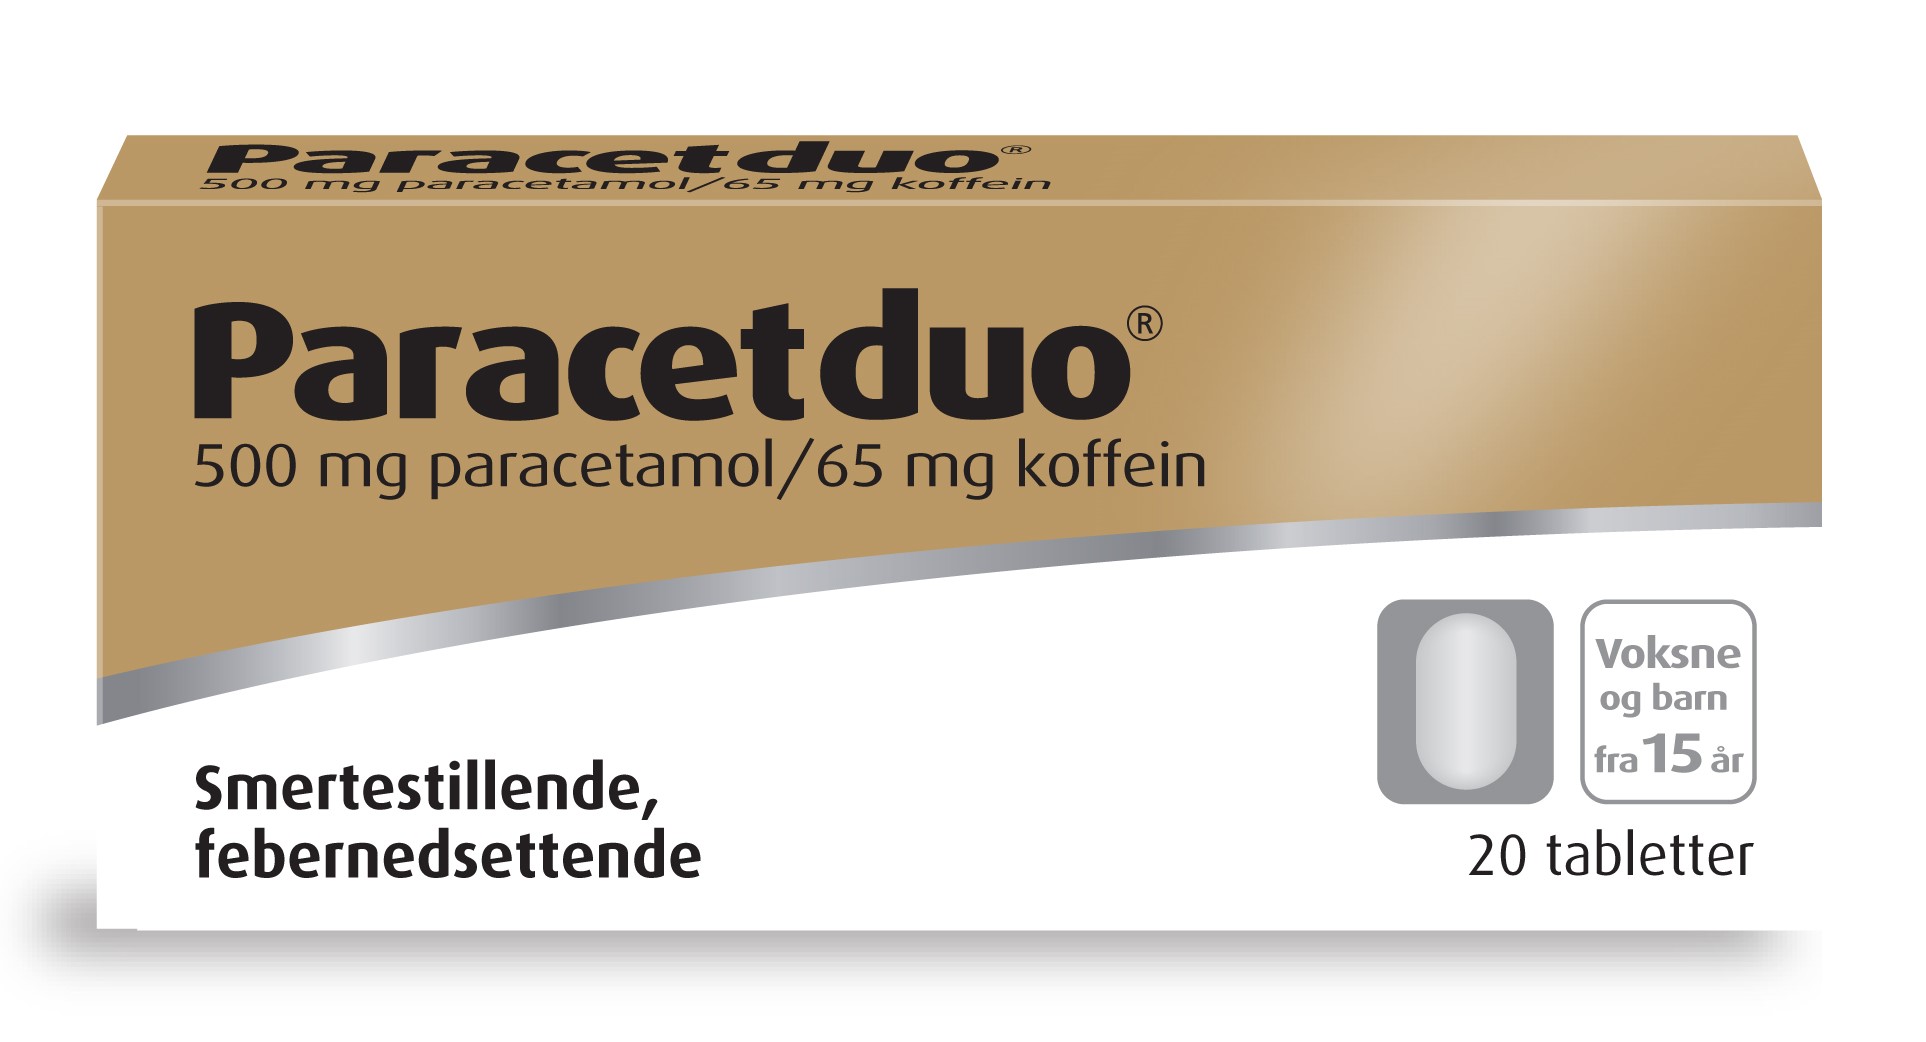 Paracetduo Tabletter, 20 stk.